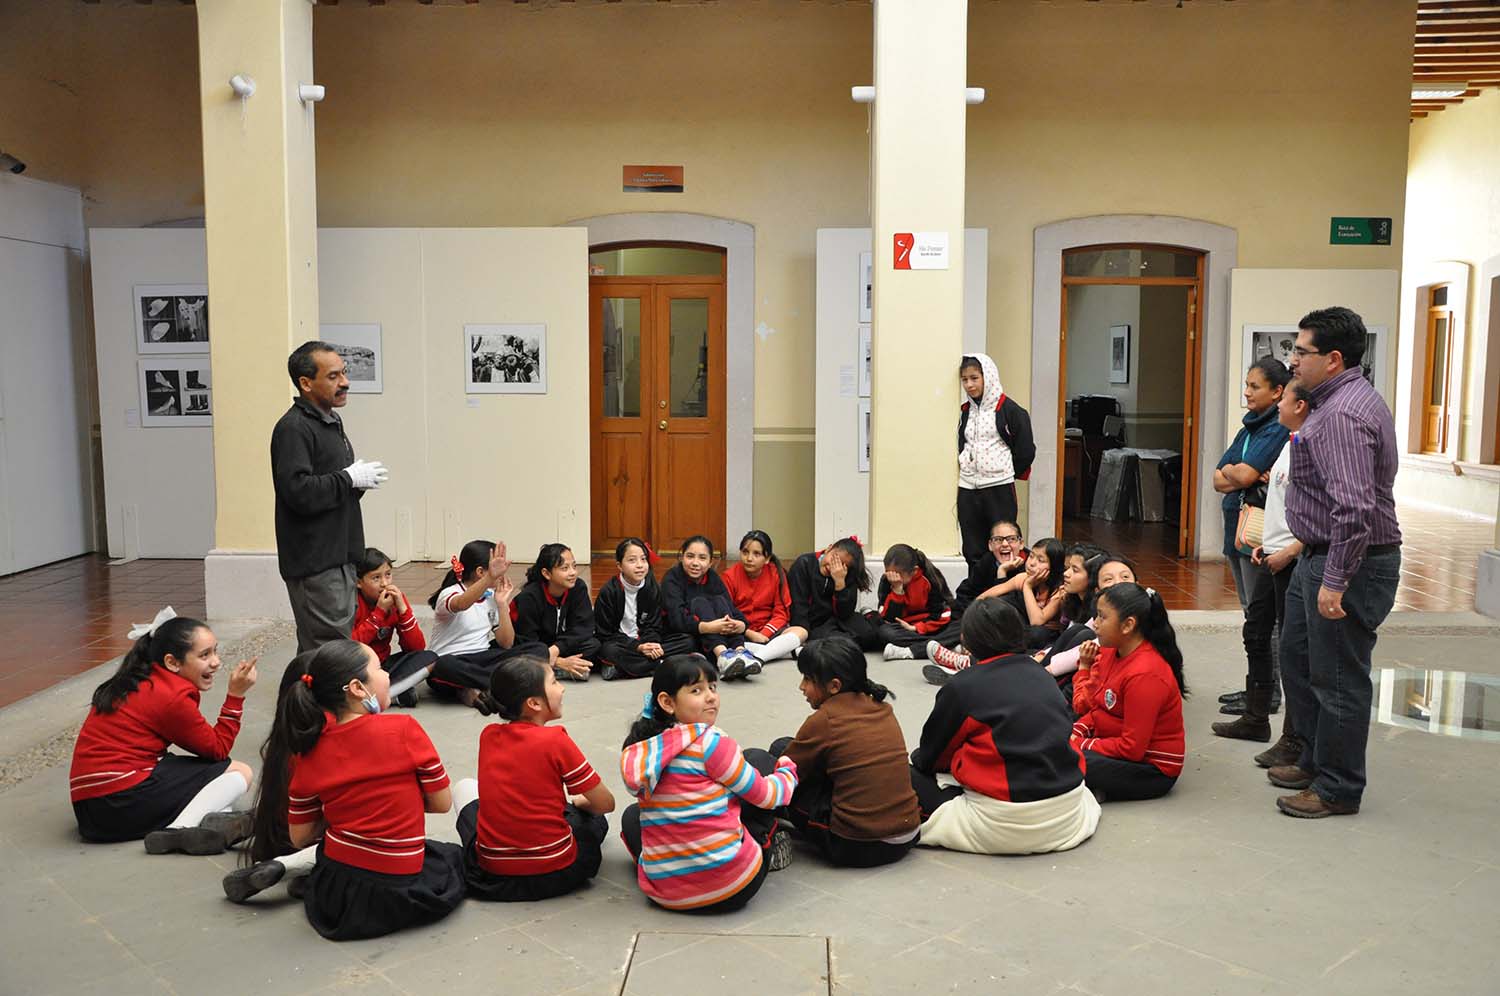 Alumnas de la escuela primaria Valentín Gómez Farías en visita a la Fototeca de Zacatecas el 13 de febrero de 2014.